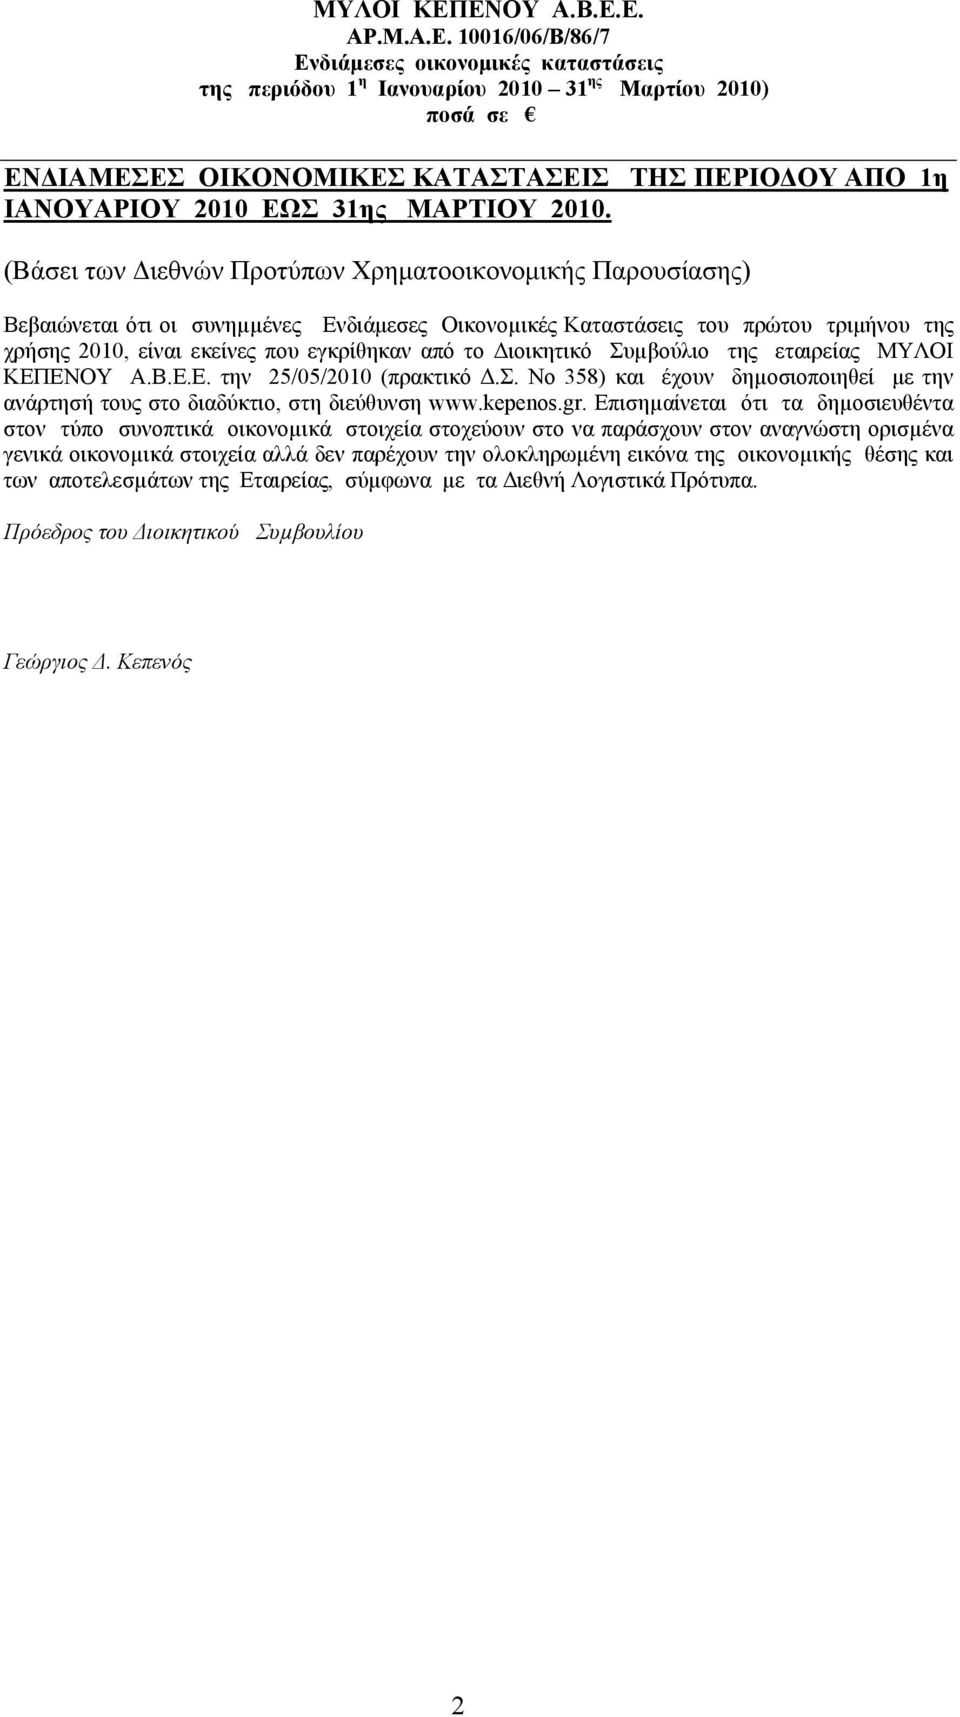 Διοικητικό Συµβούλιο της εταιρείας ΜΥΛΟΙ ΚΕΠΕΝΟΥ Α.Β.Ε.Ε. την 25/05/2010 (πρακτικό Δ.Σ. Νο 358) και έχουν δηµοσιοποιηθεί με την ανάρτησή τους στο διαδύκτιο, στη διεύθυνση www.kepenos.gr.